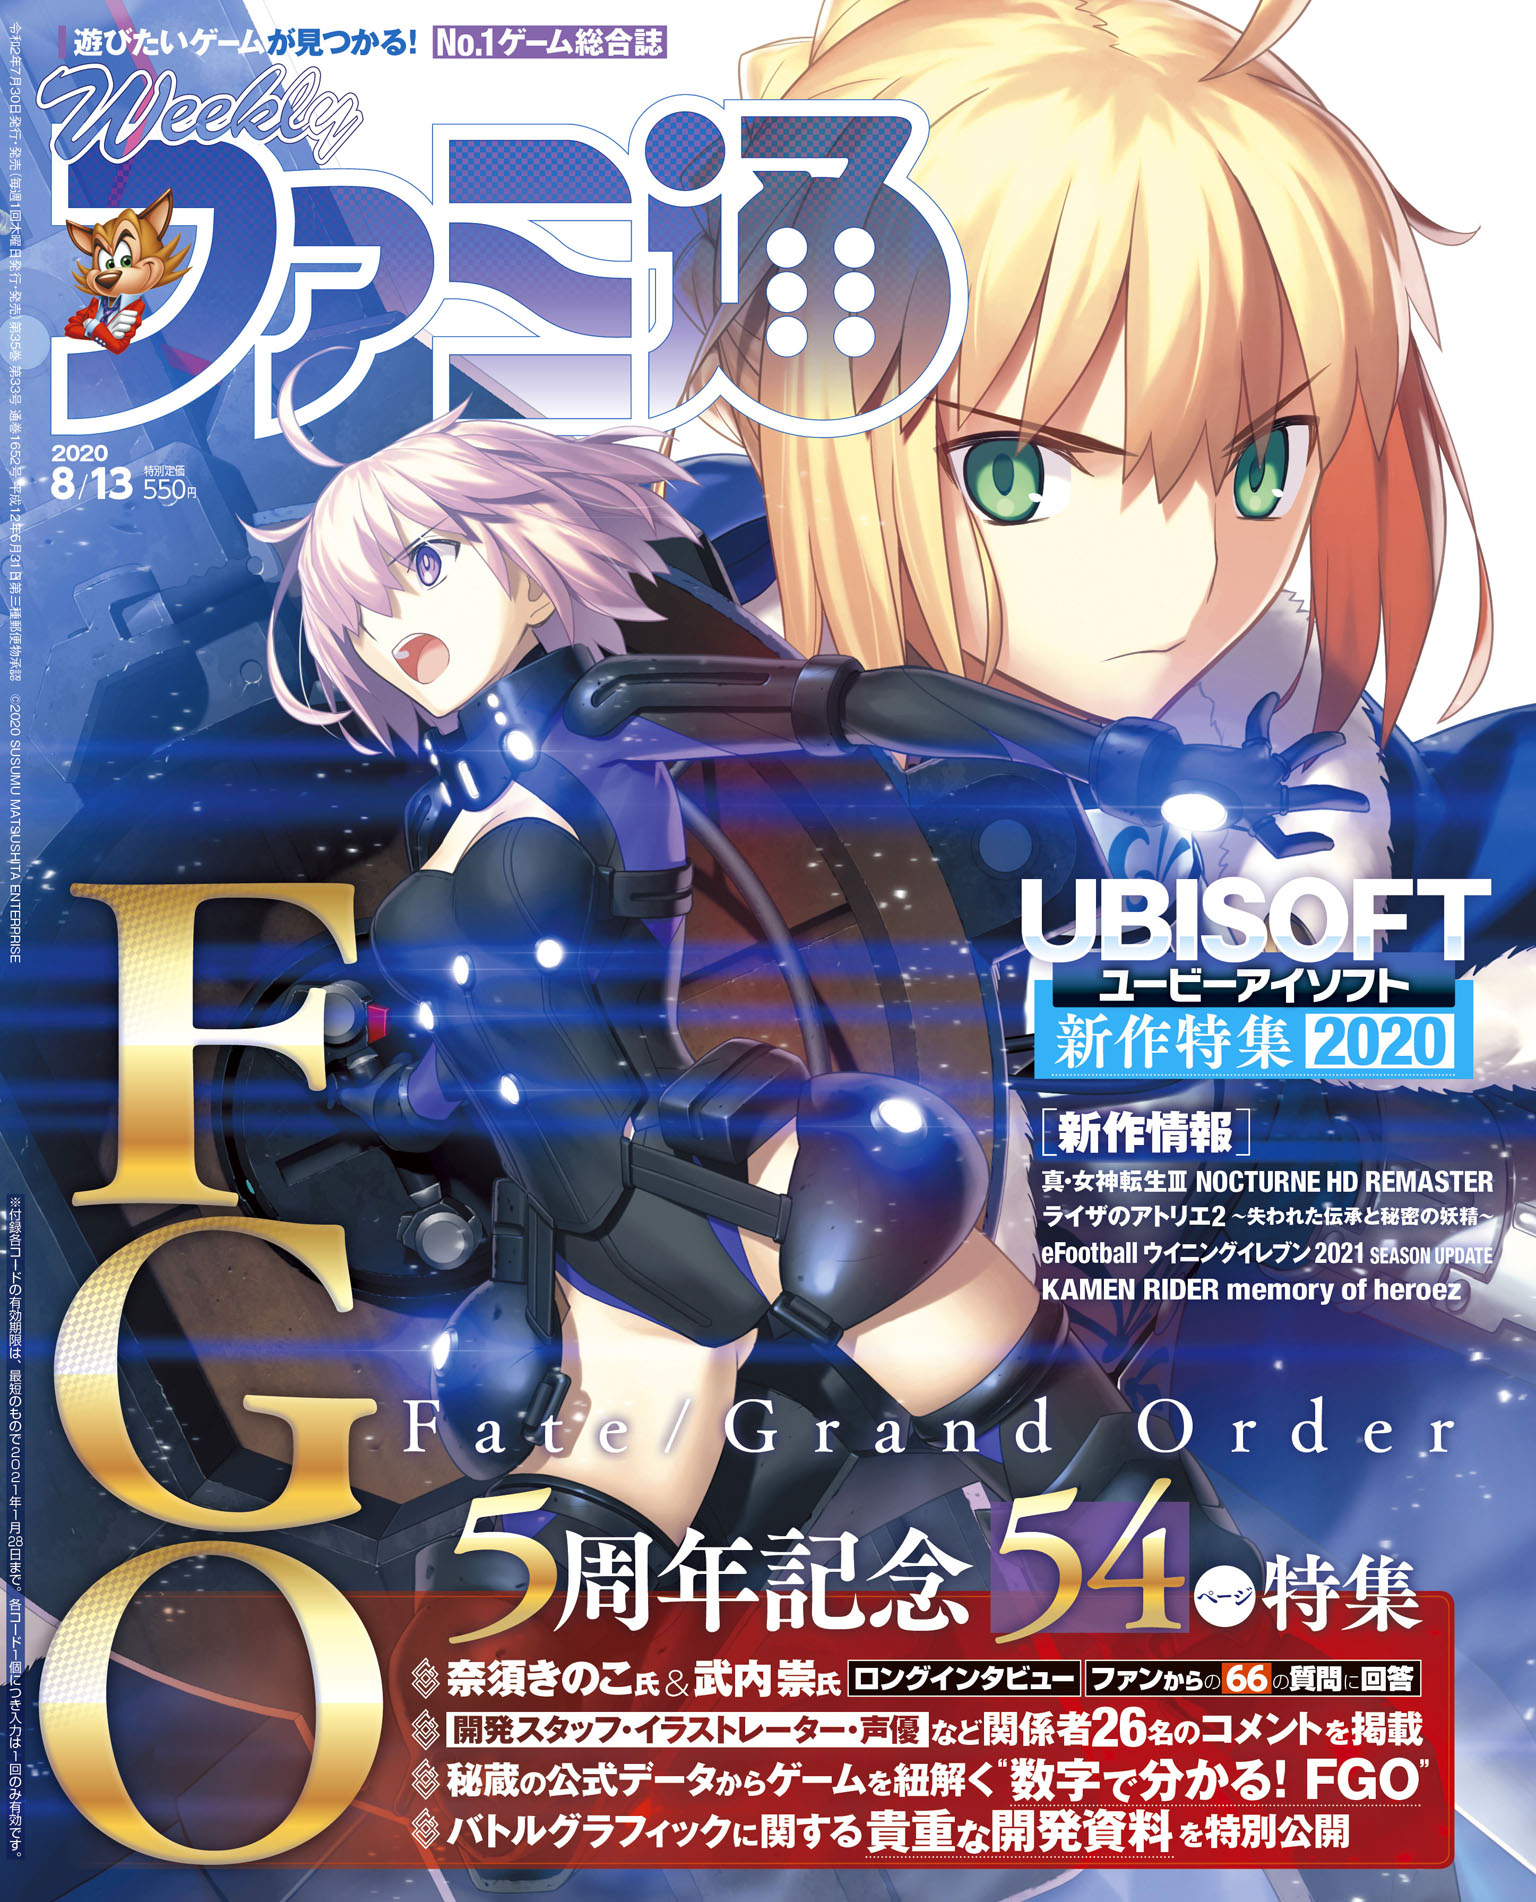 ゲーム情報誌 週刊ファミ通 緊急重版決定 Fate Grand Order 号の勢いが止まらない 株式会社kadokawaのプレスリリース